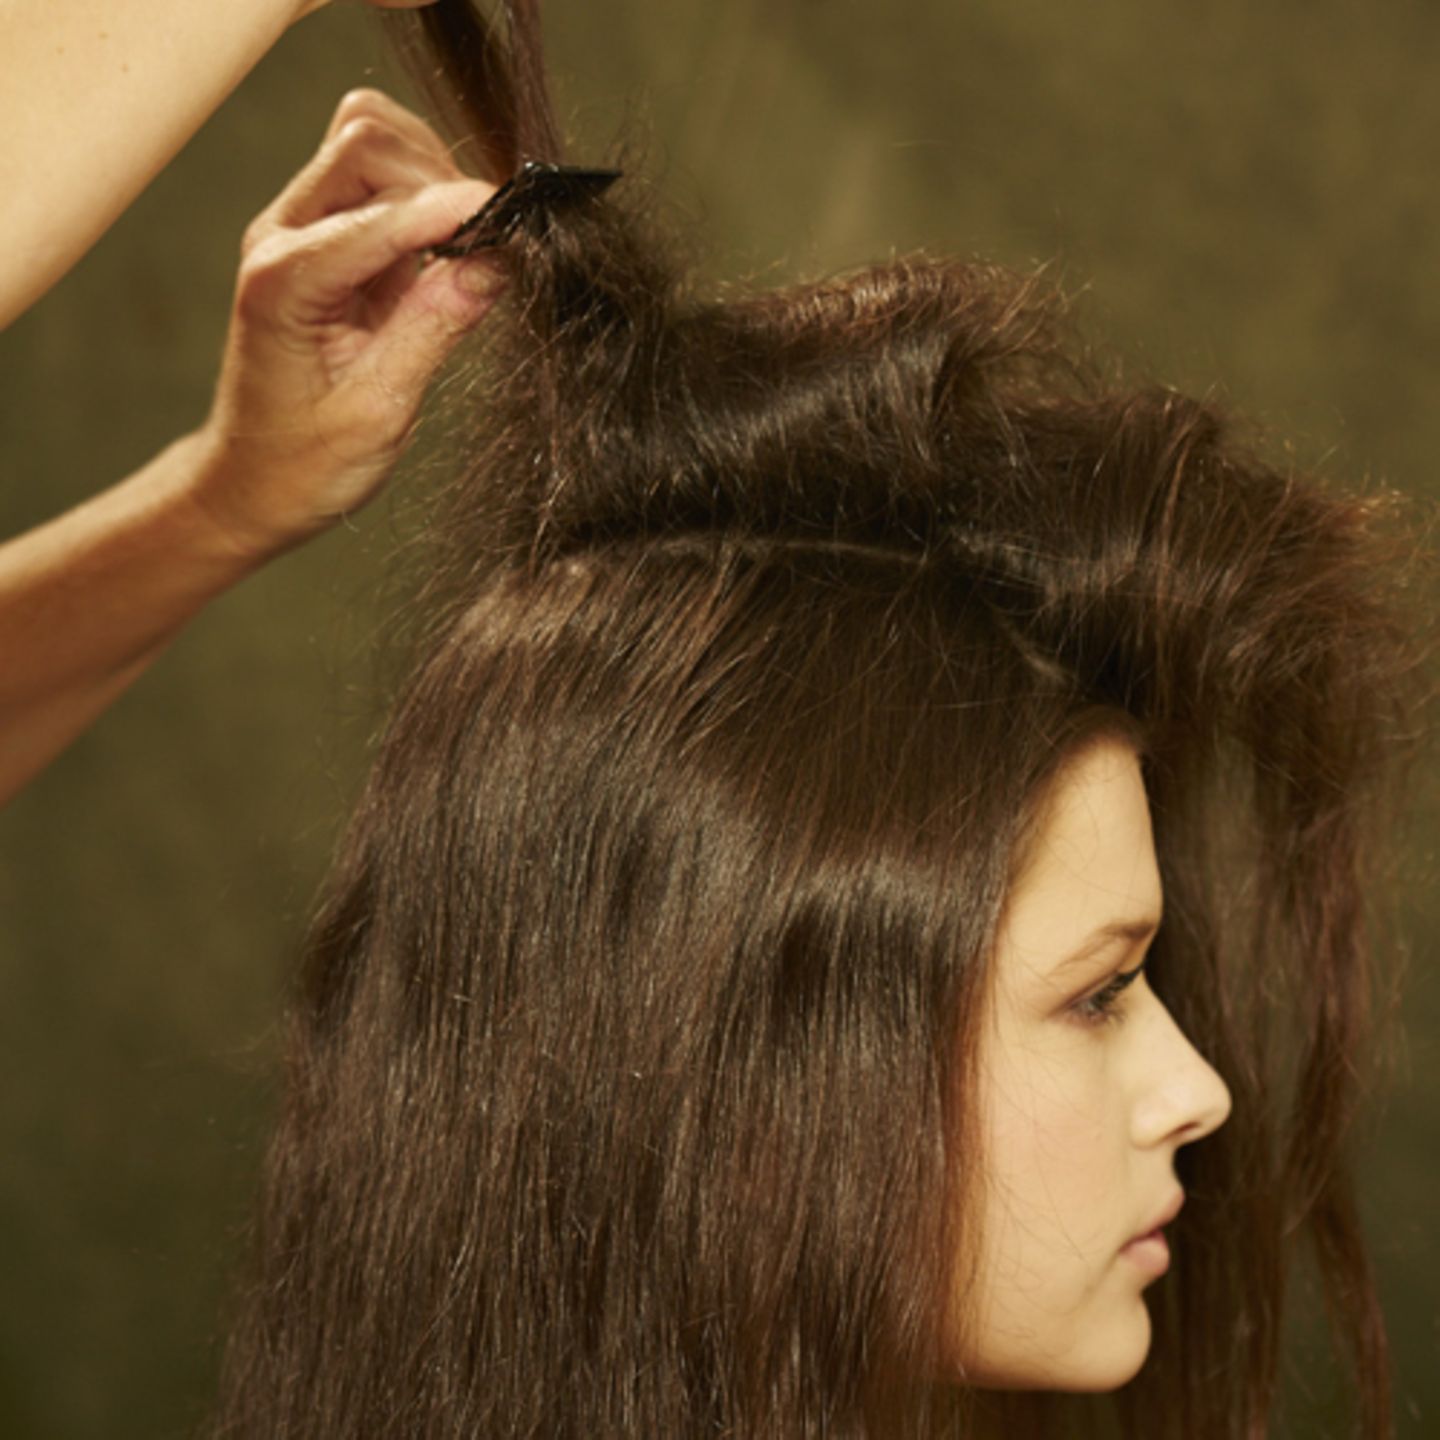 Einen Mittelscheitel ziehen und die Haare auf einer Seite mit Haarspray und Kamm antoupieren.